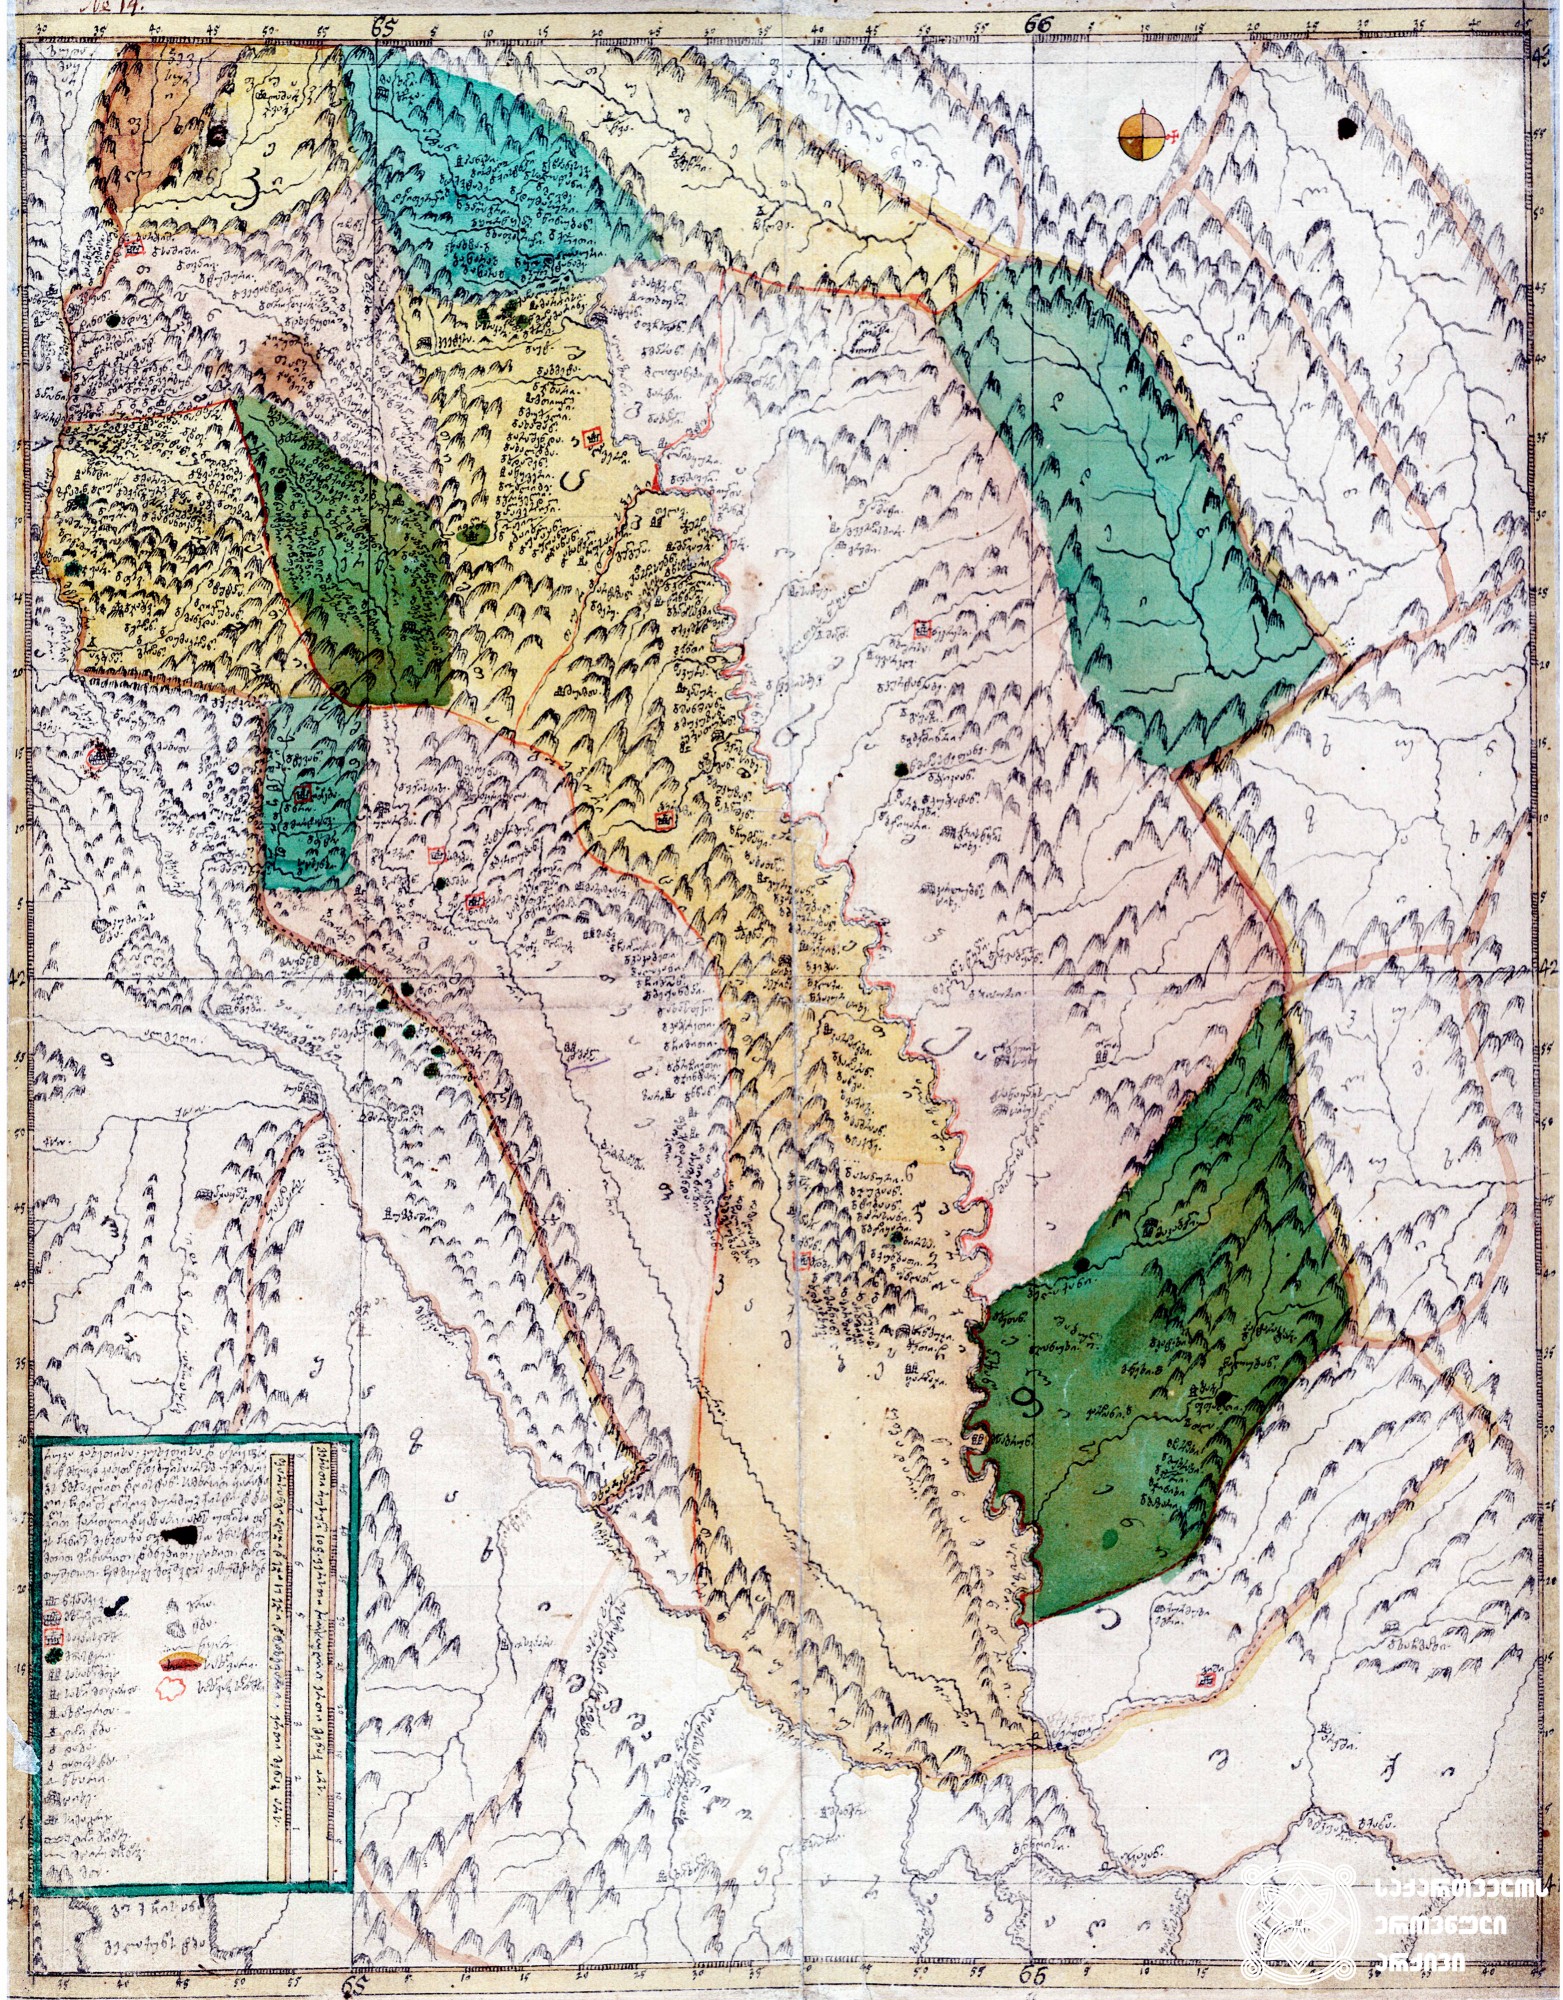 ვახუშტის ატლასი <br>
კახეთისა და ჰერეთის რუკა <br>
Atlas of Vakhushti <br>
The map of Kakheti and Hereti <br>
„რუკა კახეთისა, კუხეთისა და ჰერეთისა და აწ მხოლოდ კახეთად წოდებულისა, რომელსა უმდებარებს აღმოსავლით დაღისტანი, სამხრით ყარაბაღი, ჩდილოთ ღლიღვ-ძურძუკი-ქისტი. და დასავლით ქართლი და ყაზახი, ახალს უფლისა ფელეს პოვნილს მენაკთა ზედა თვისის ეკლესიით, მონასტრით, მთით, მდინარით, დაბნებით, ციხით დიდოეთით, თუშეთით, ჩემ მიერვე მეფიშვილის ვახუშტისაგან“.